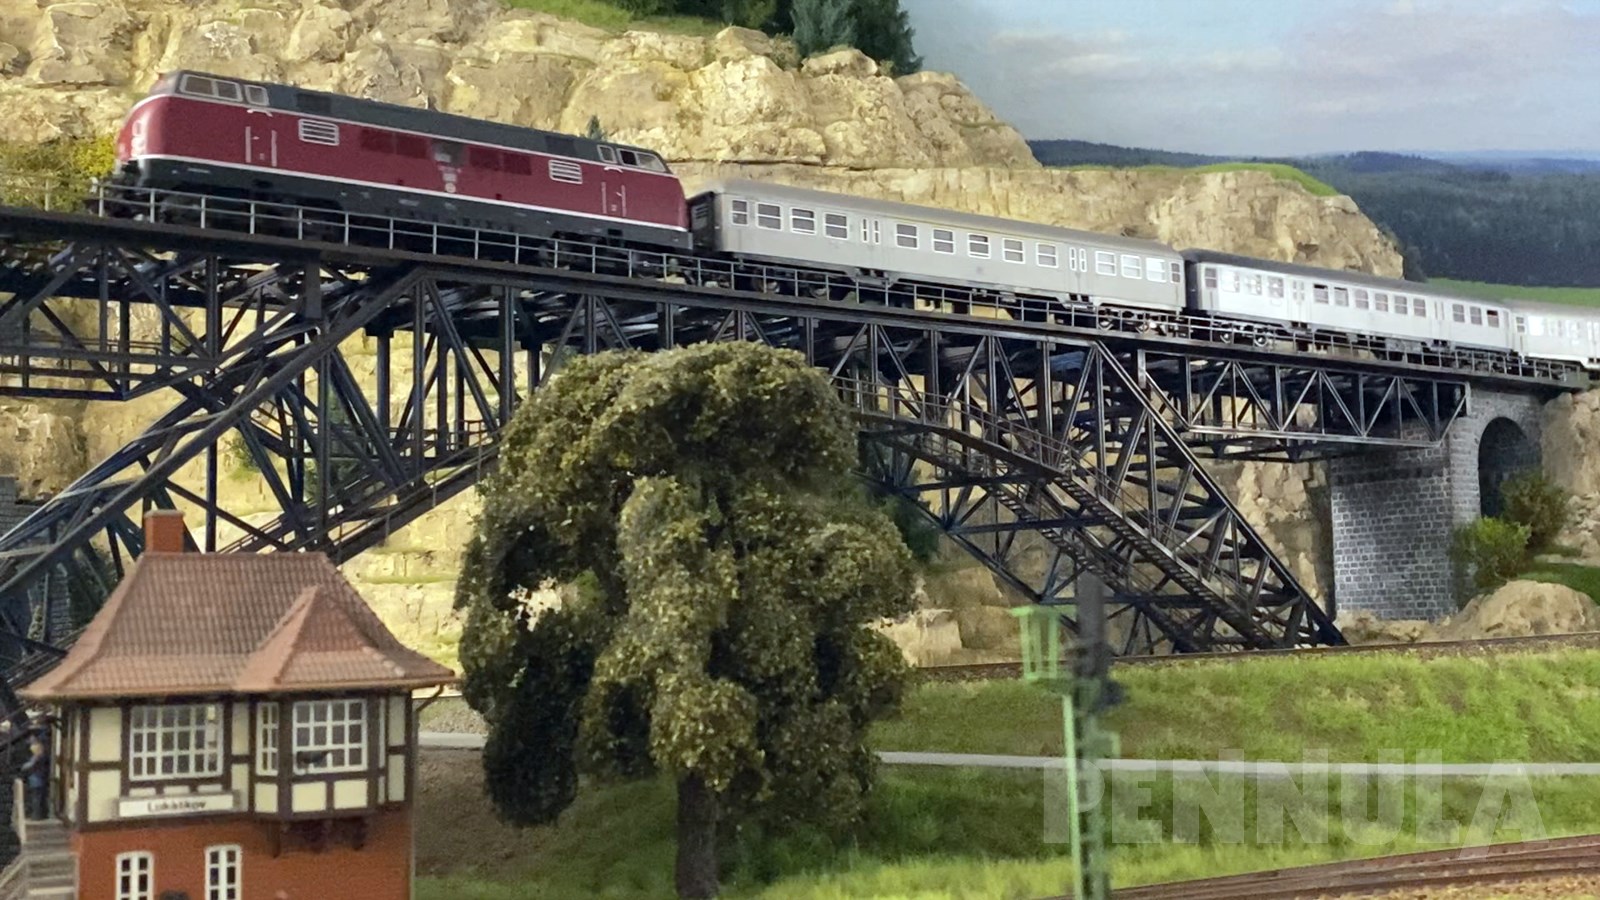 Auf vielen Modellbahnen sind Lokomotiven der Deutschen Bundesbahn aus den alten Eisenbahn-Epochen sehr beliebt, so etwa die mächtige Diesellokomotive der Baureihe V 200 bzw. der DB Baureihe 220, die in der Schweiz besser als Am 4/4 bekannt ist.